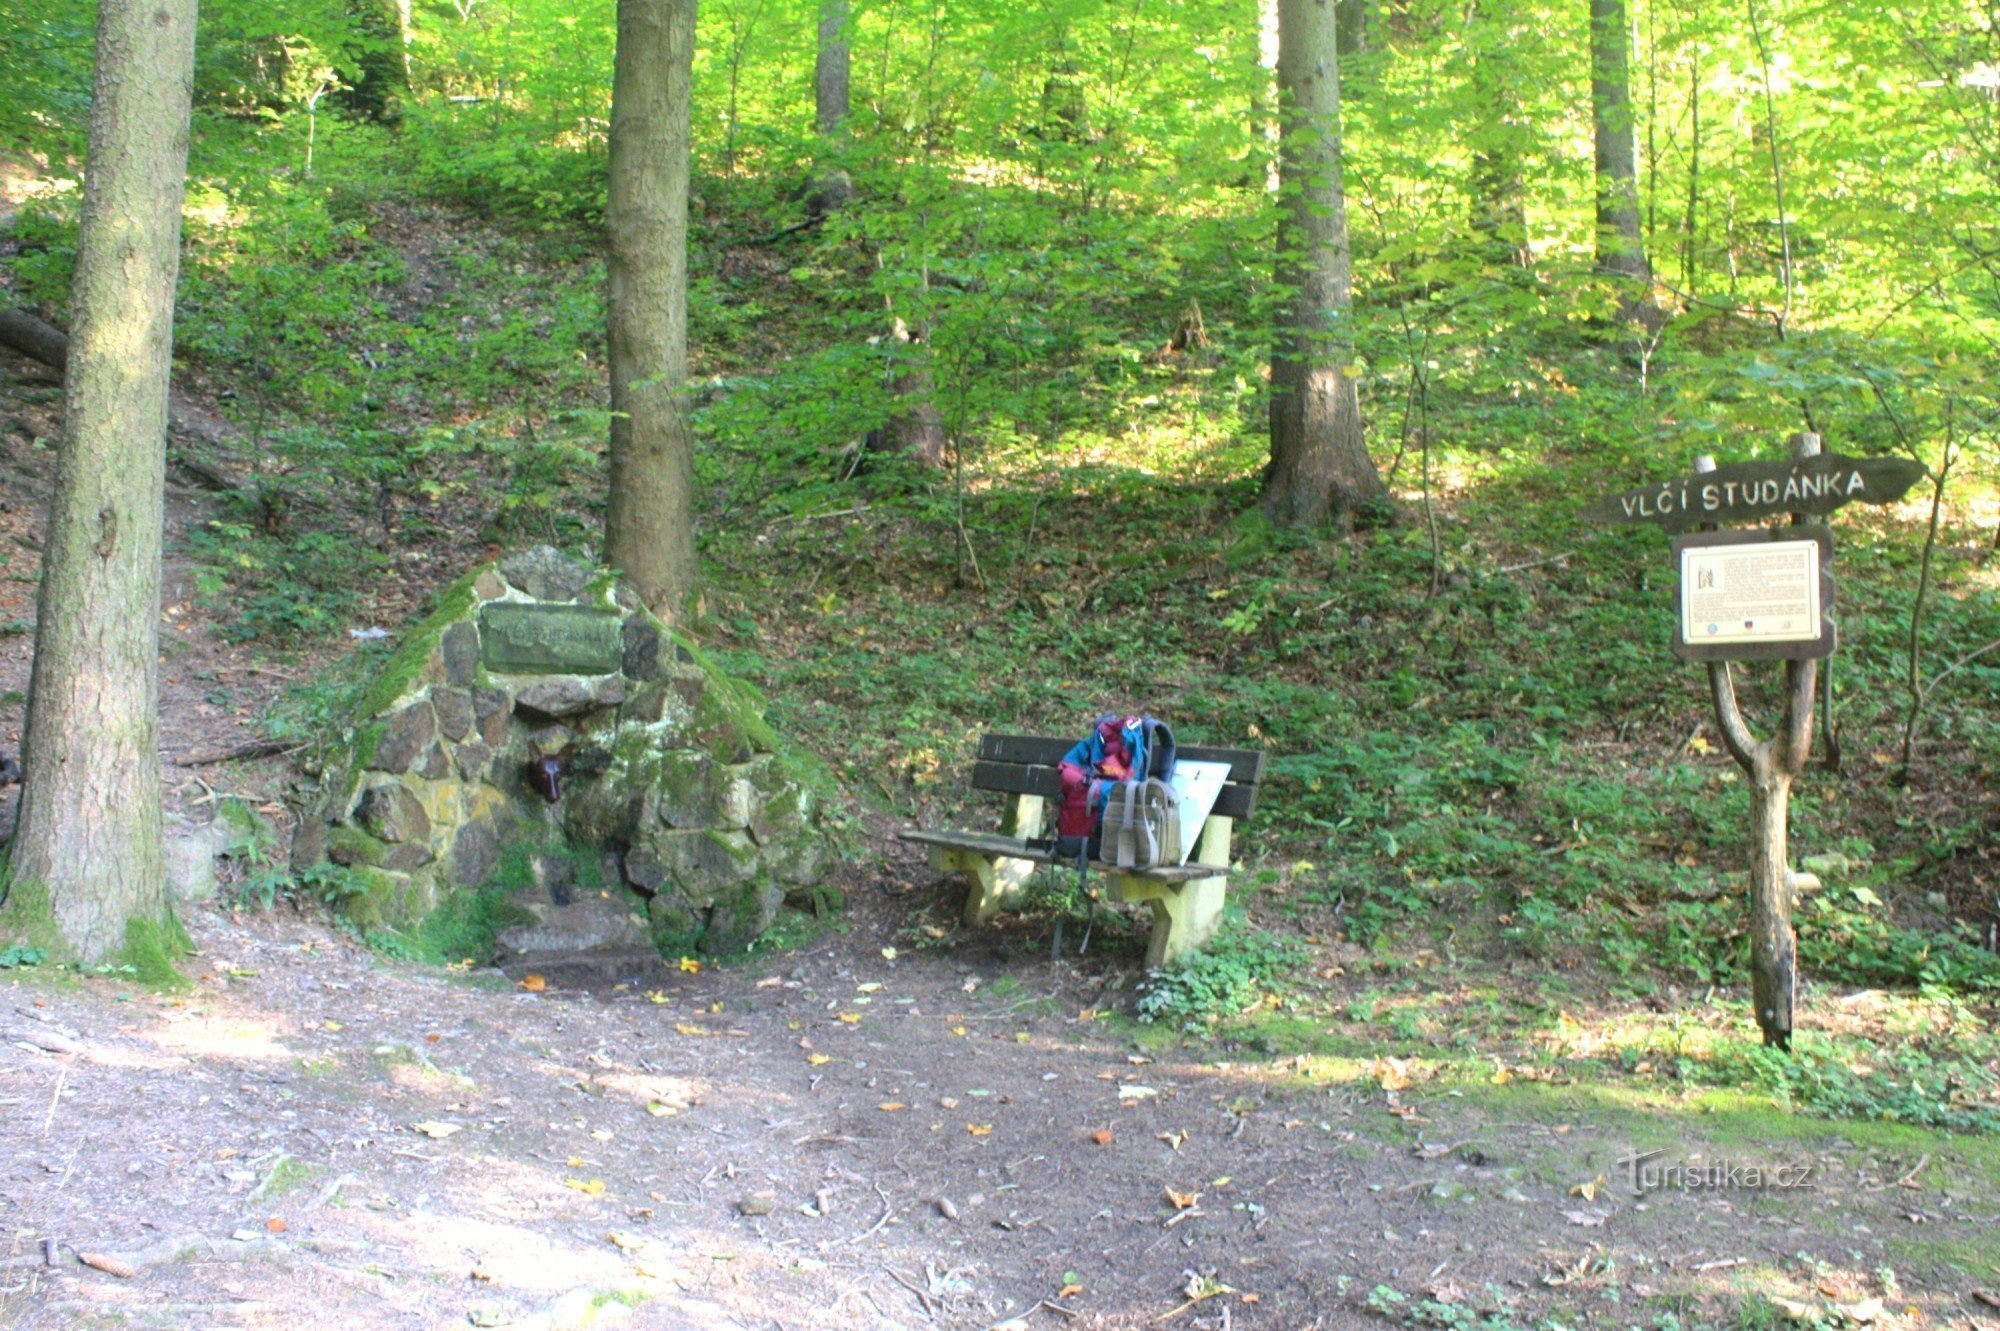 Resting place Vlčí studánka